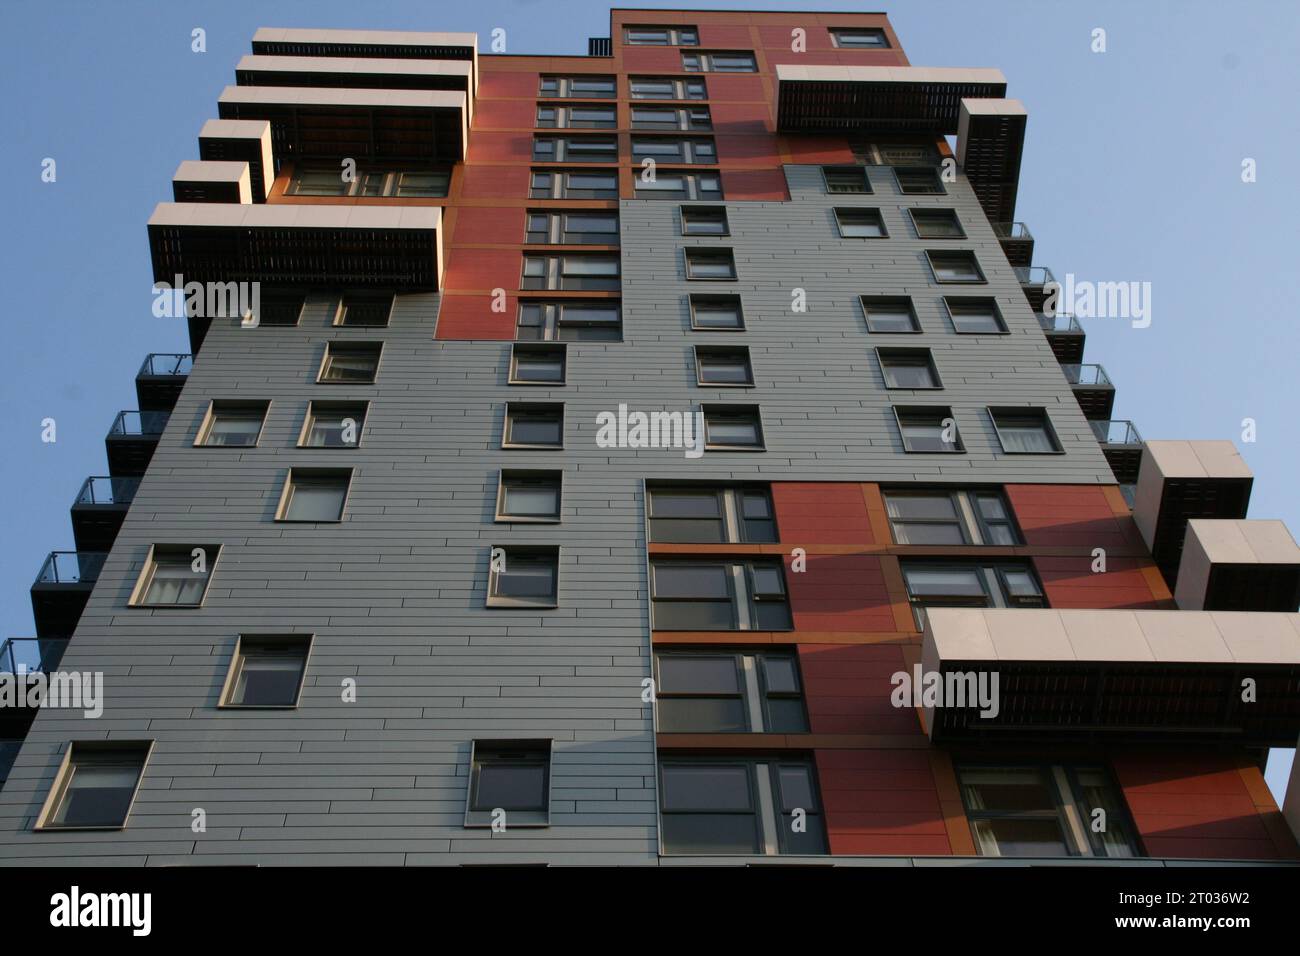 Un'immagine dall'angolo basso di un moderno edificio residenziale con balconi freschi a Londra, Regno Unito Foto Stock